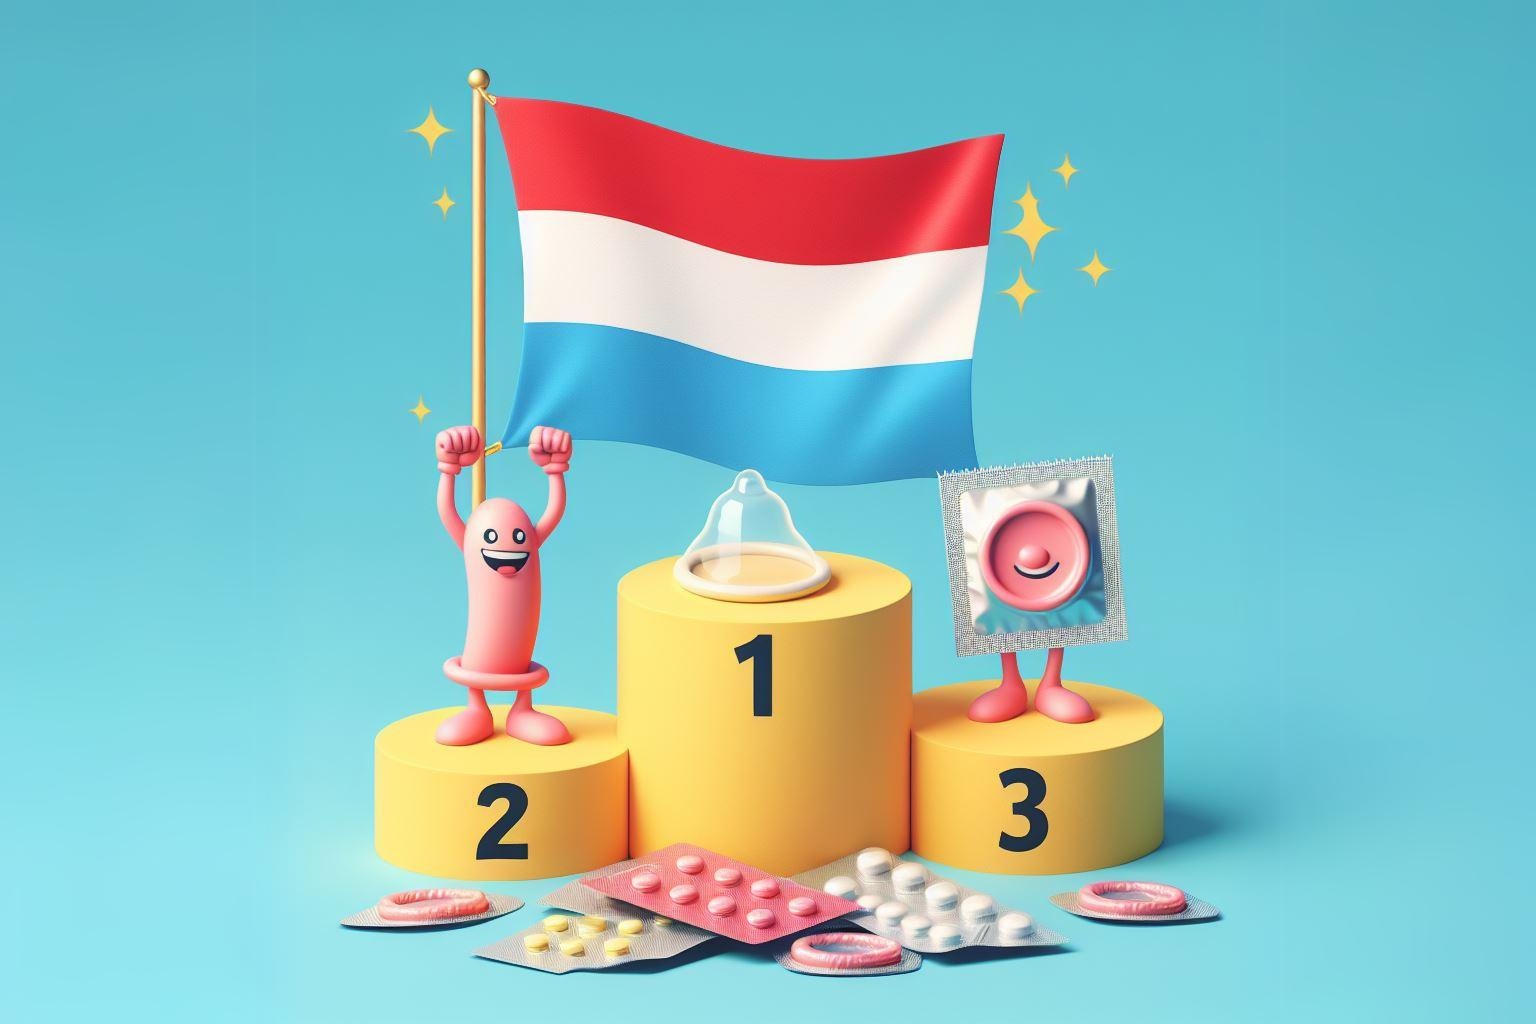 O Luxemburgo ocupa o primeiro lugar no pódio dos vencedores no que respeita à contraceção